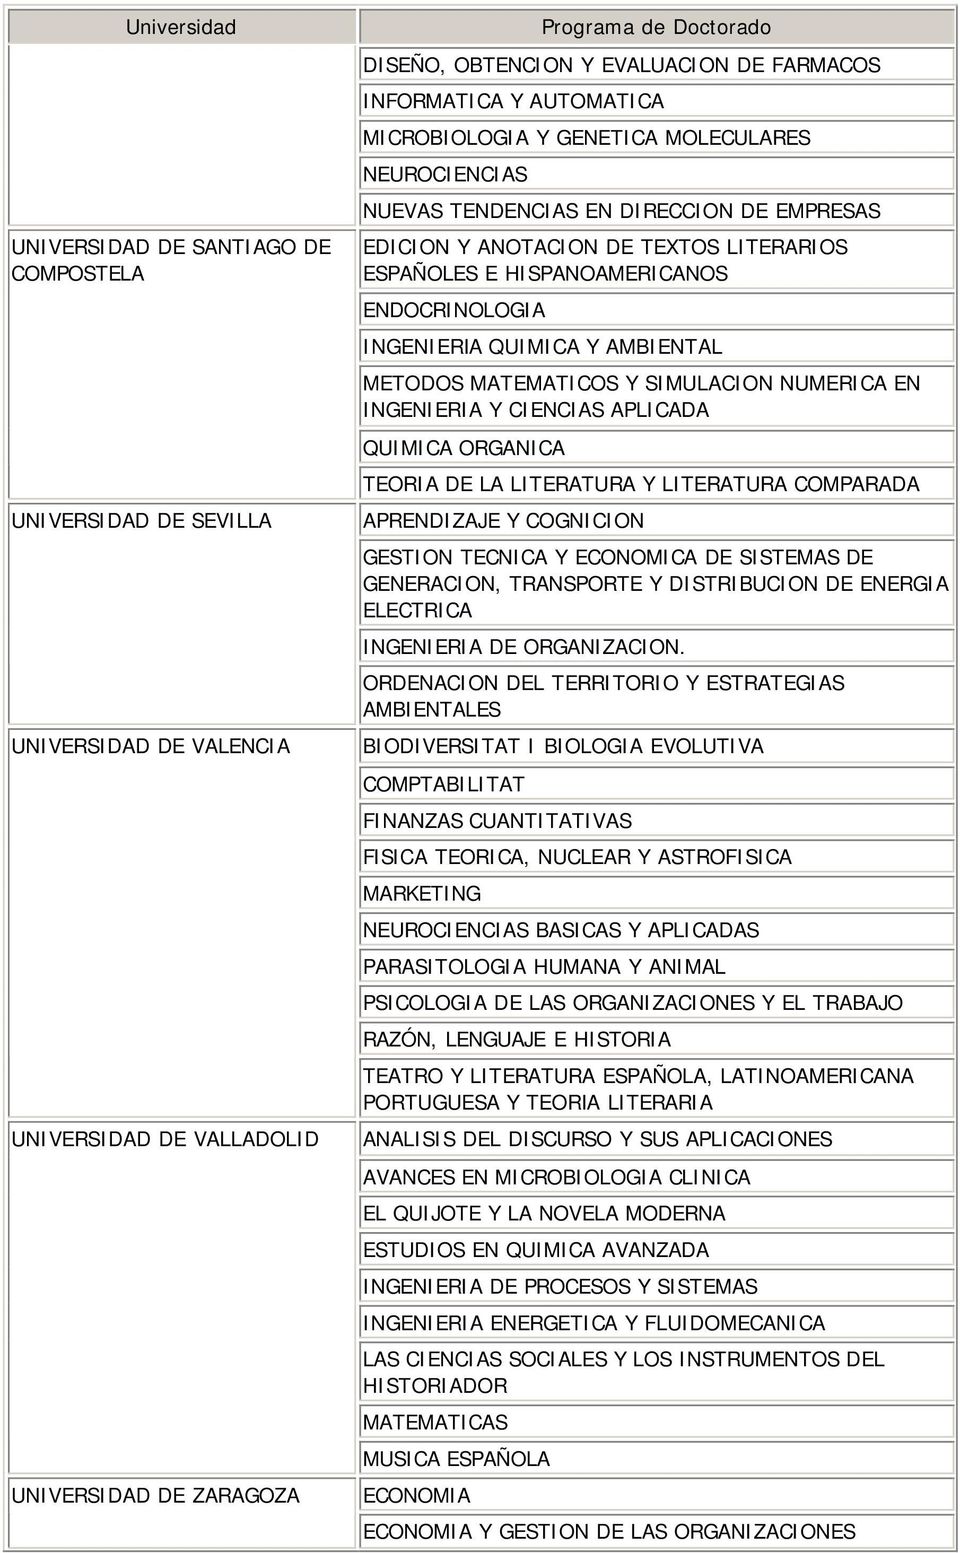 INGENIERIA QUIMICA Y AMBIENTAL METODOS MATEMATICOS Y SIMULACION NUMERICA EN INGENIERIA Y CIENCIAS APLICADA QUIMICA ORGANICA TEORIA DE LA LITERATURA Y LITERATURA COMPARADA APRENDIZAJE Y COGNICION